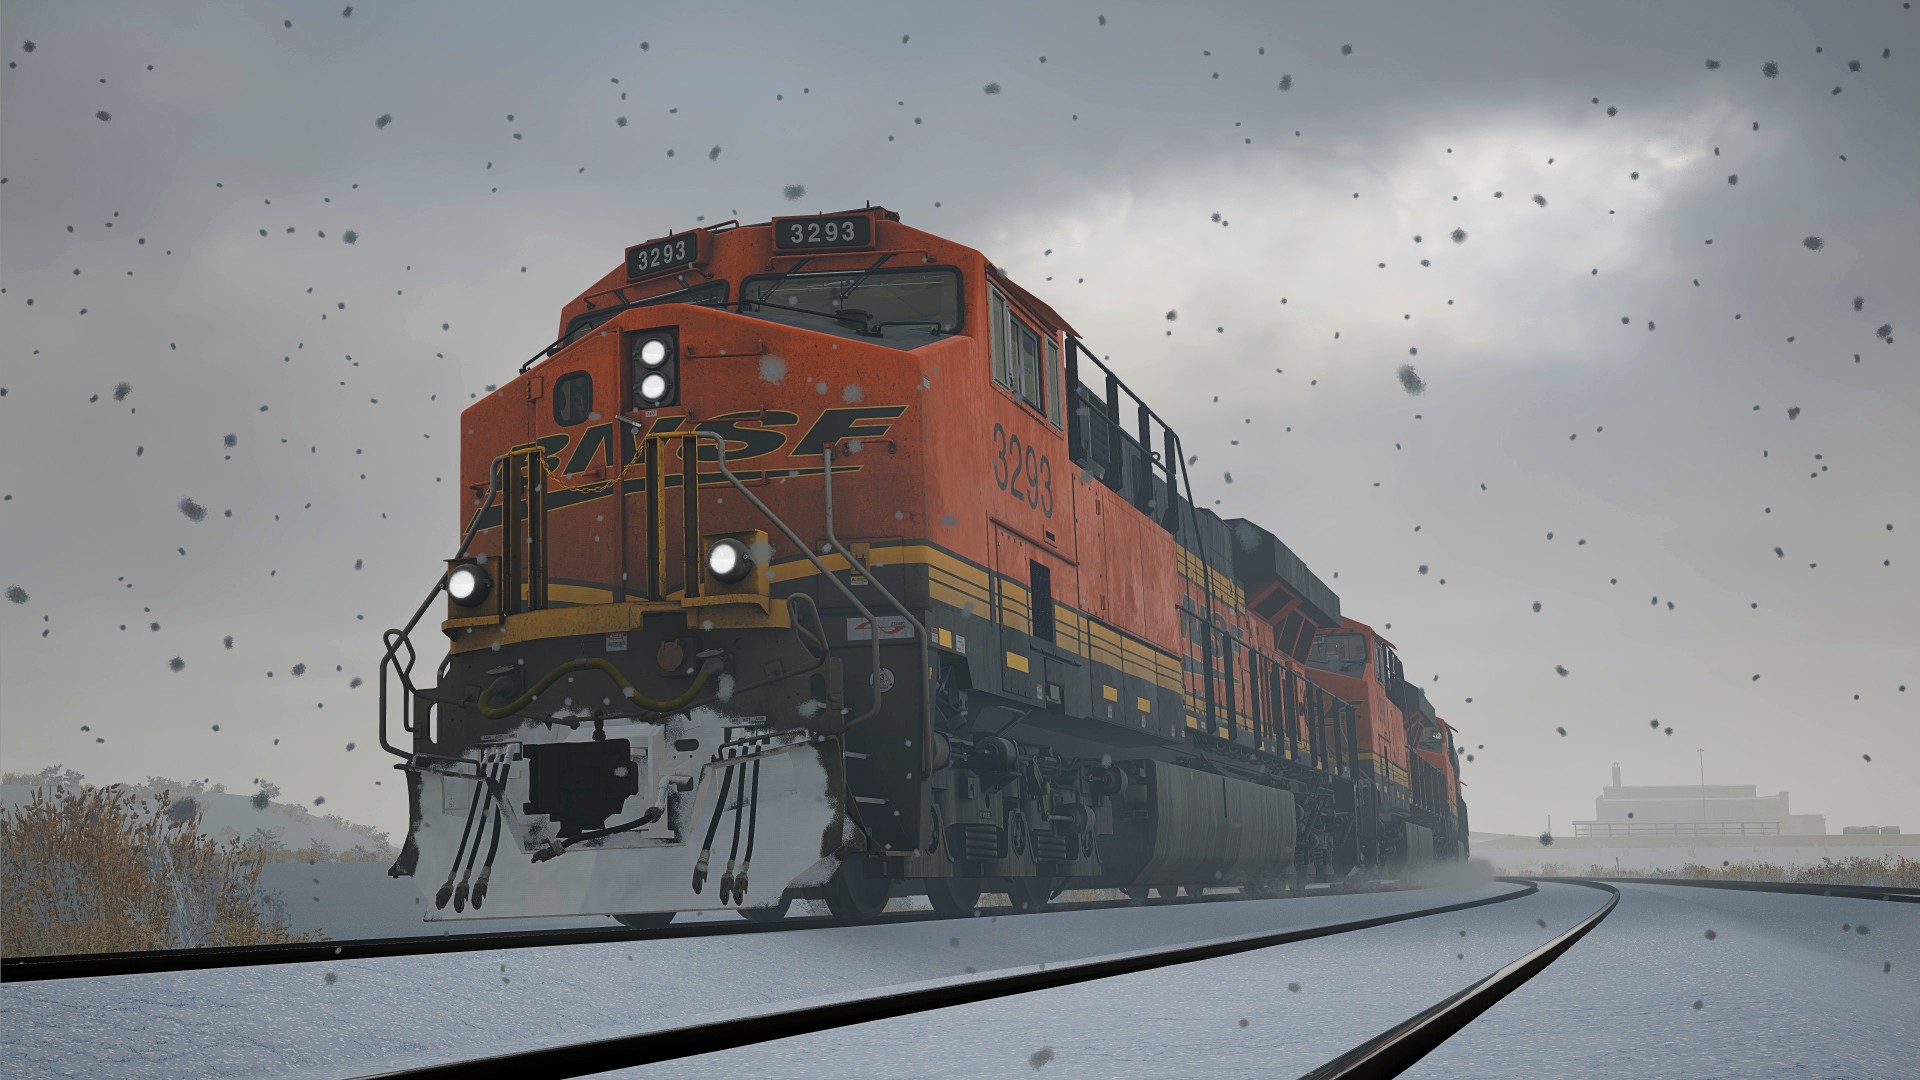 Train Sim World 3 release date set for September